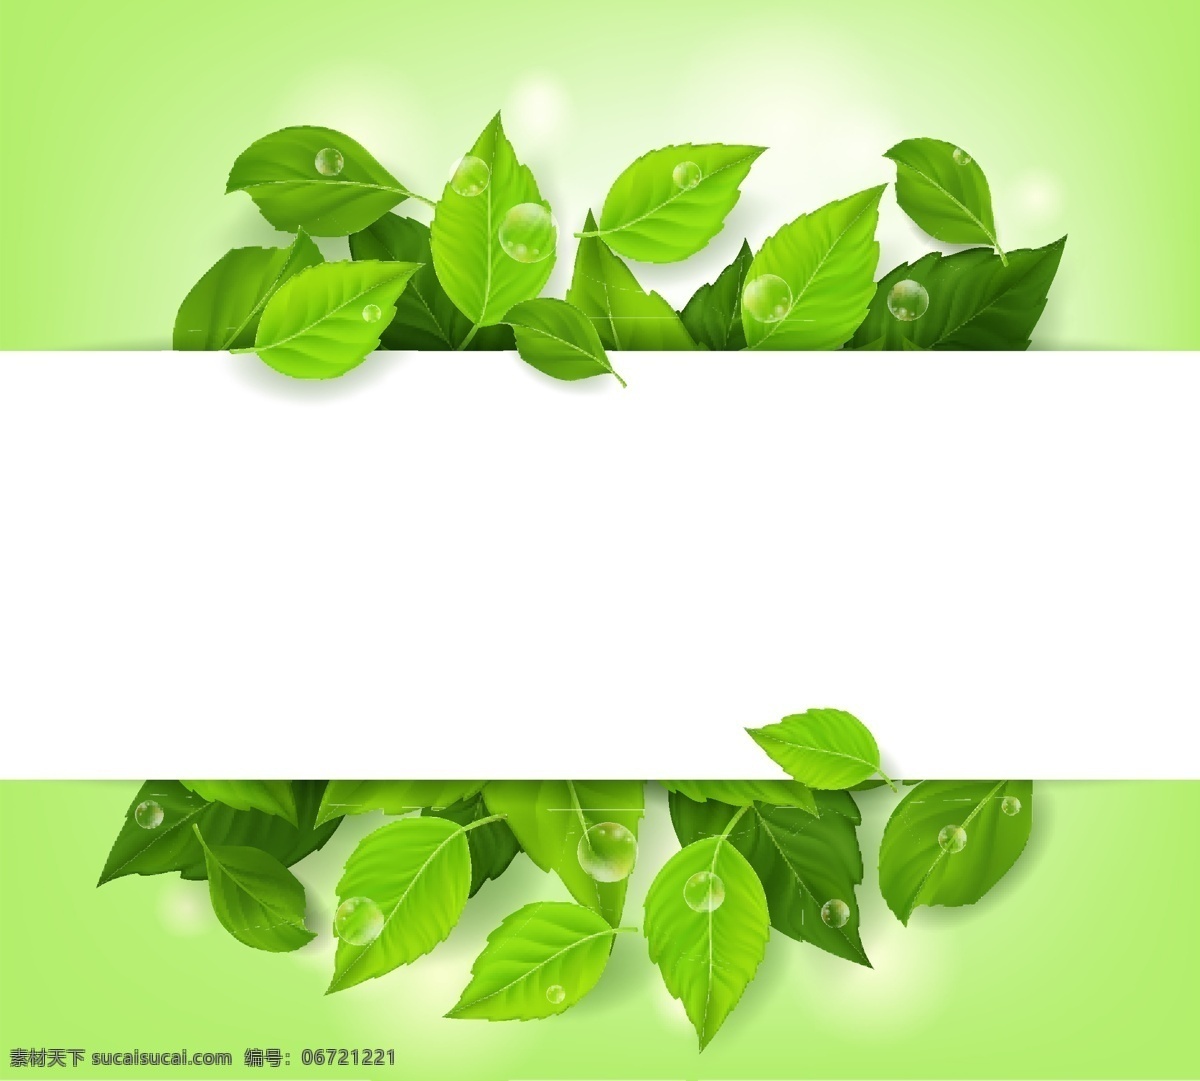 绿色 手绘 叶子 卡通 矢量 英文 印花 矢量素材 设计素材 平面素材